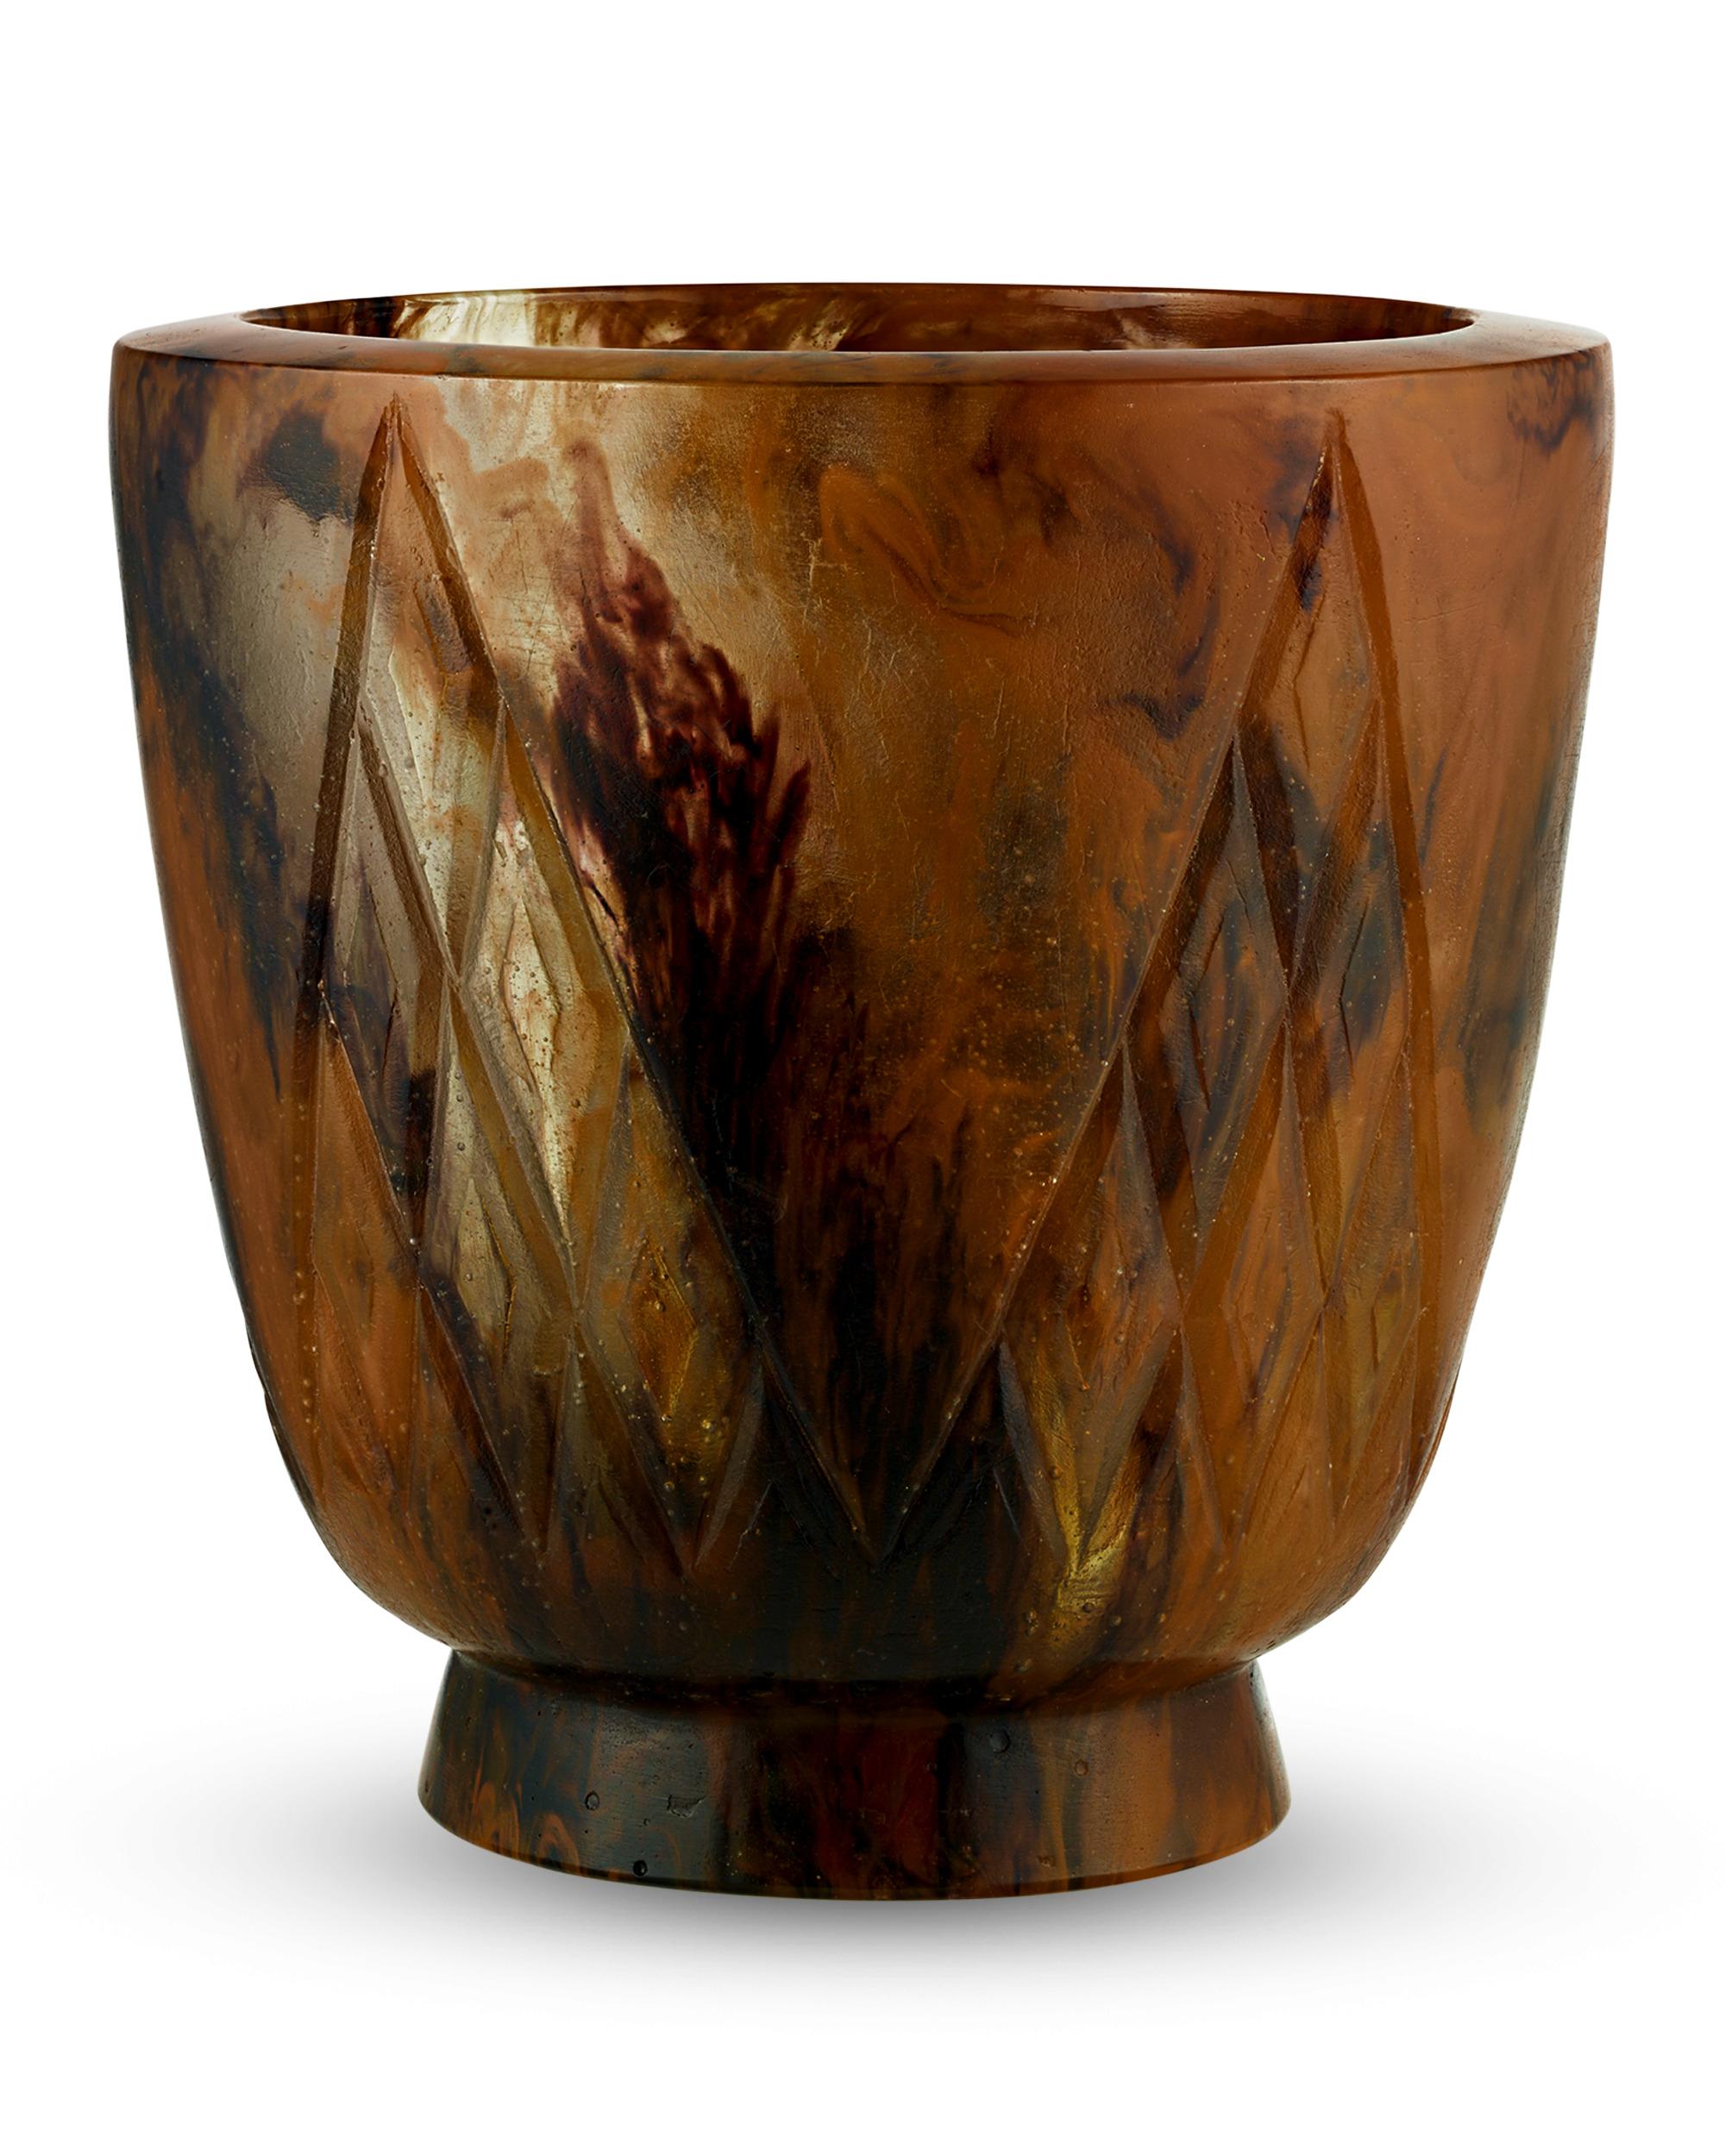 Diese schimmernde Vase wurde von dem berühmten französischen Glasmacher François-Emile Décorchemont handgefertigt. Décorchemont, der für die Beherrschung der Pâte-de-verre-Methode berühmt ist, perfektionierte auch die hier gezeigte, ähnlich delikate